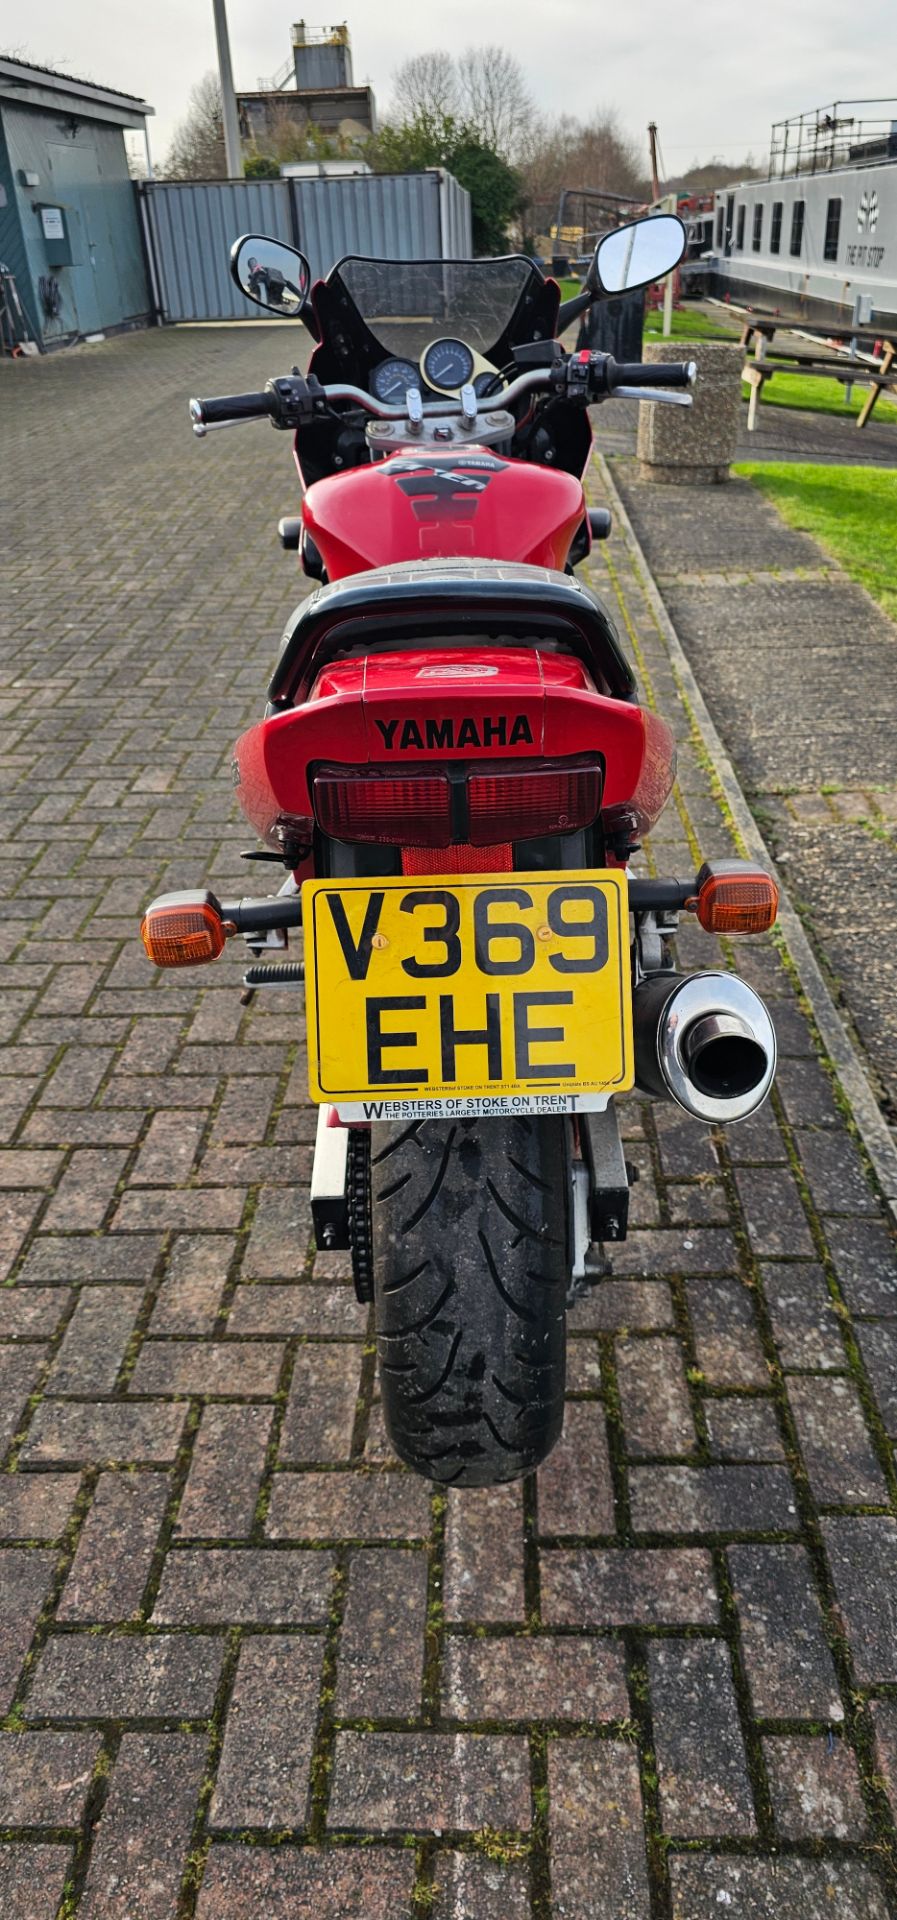 1999 Yamaha FZS 600 Fazer, 599cc. Registration number V369 EHE. Frame number JYARJ021000021406. - Image 4 of 14